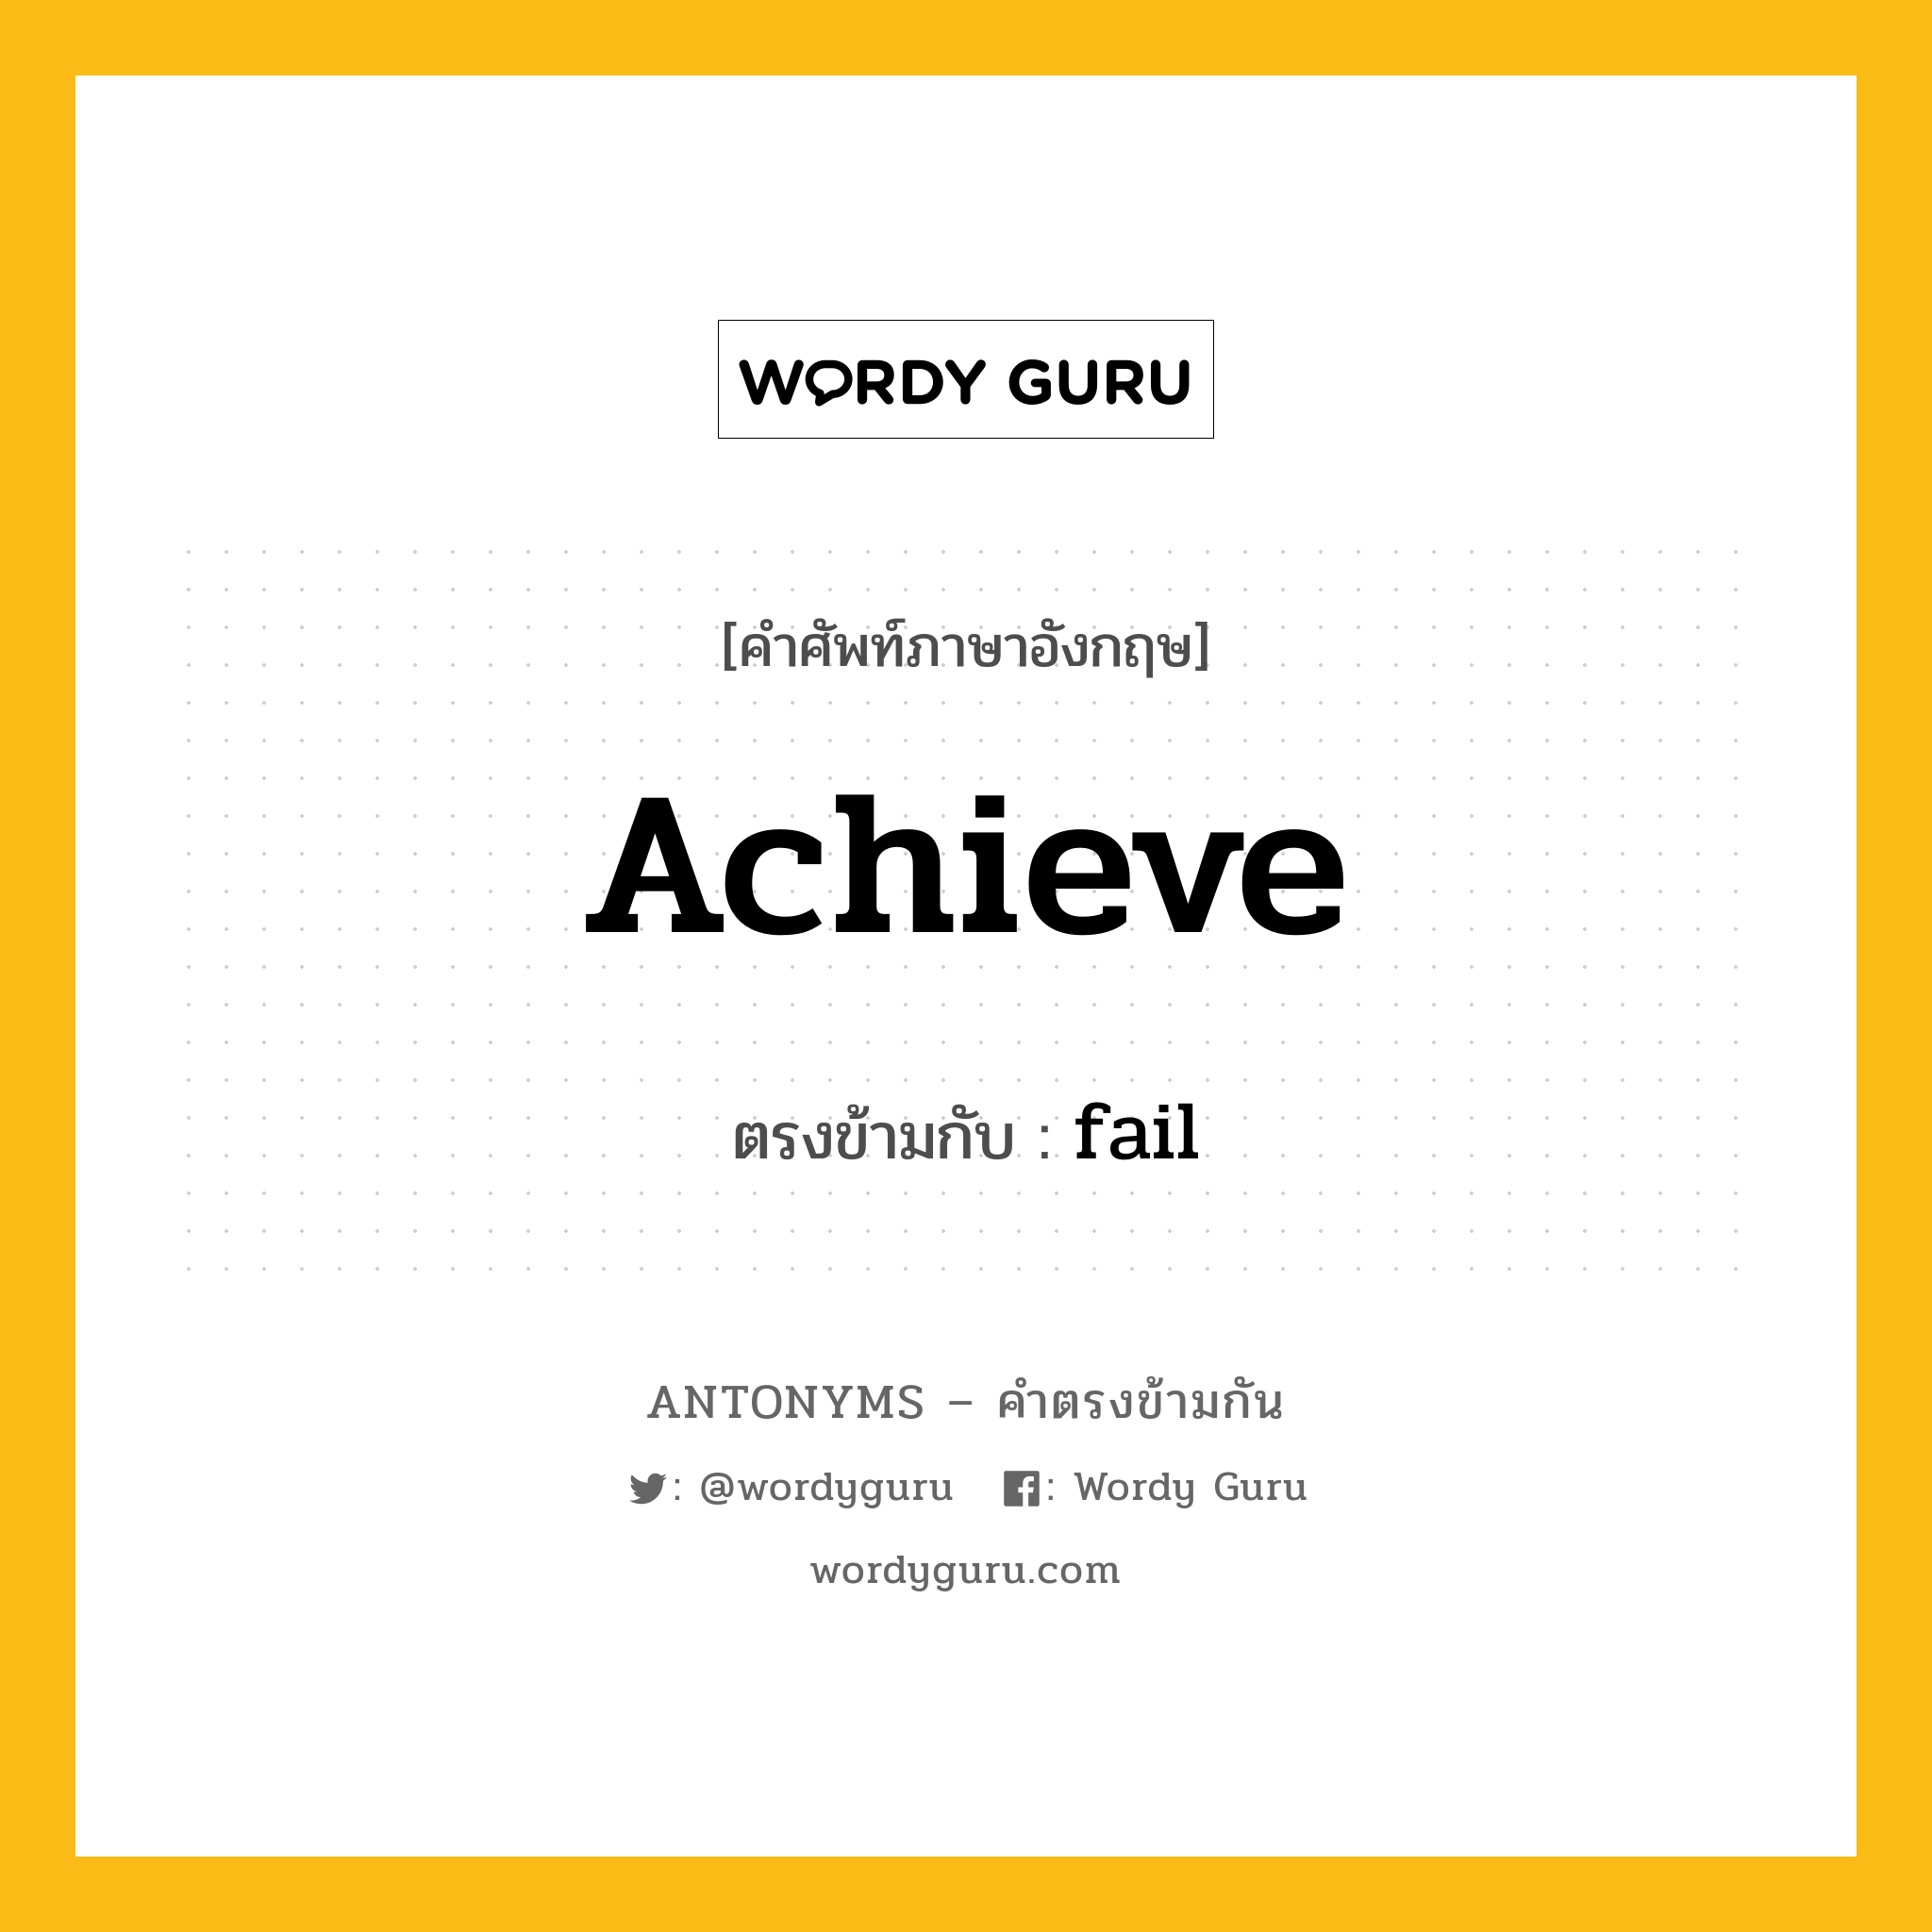 achieve เป็นคำตรงข้ามกับคำไหนบ้าง?, คำศัพท์ภาษาอังกฤษ achieve ตรงข้ามกับ fail หมวด fail